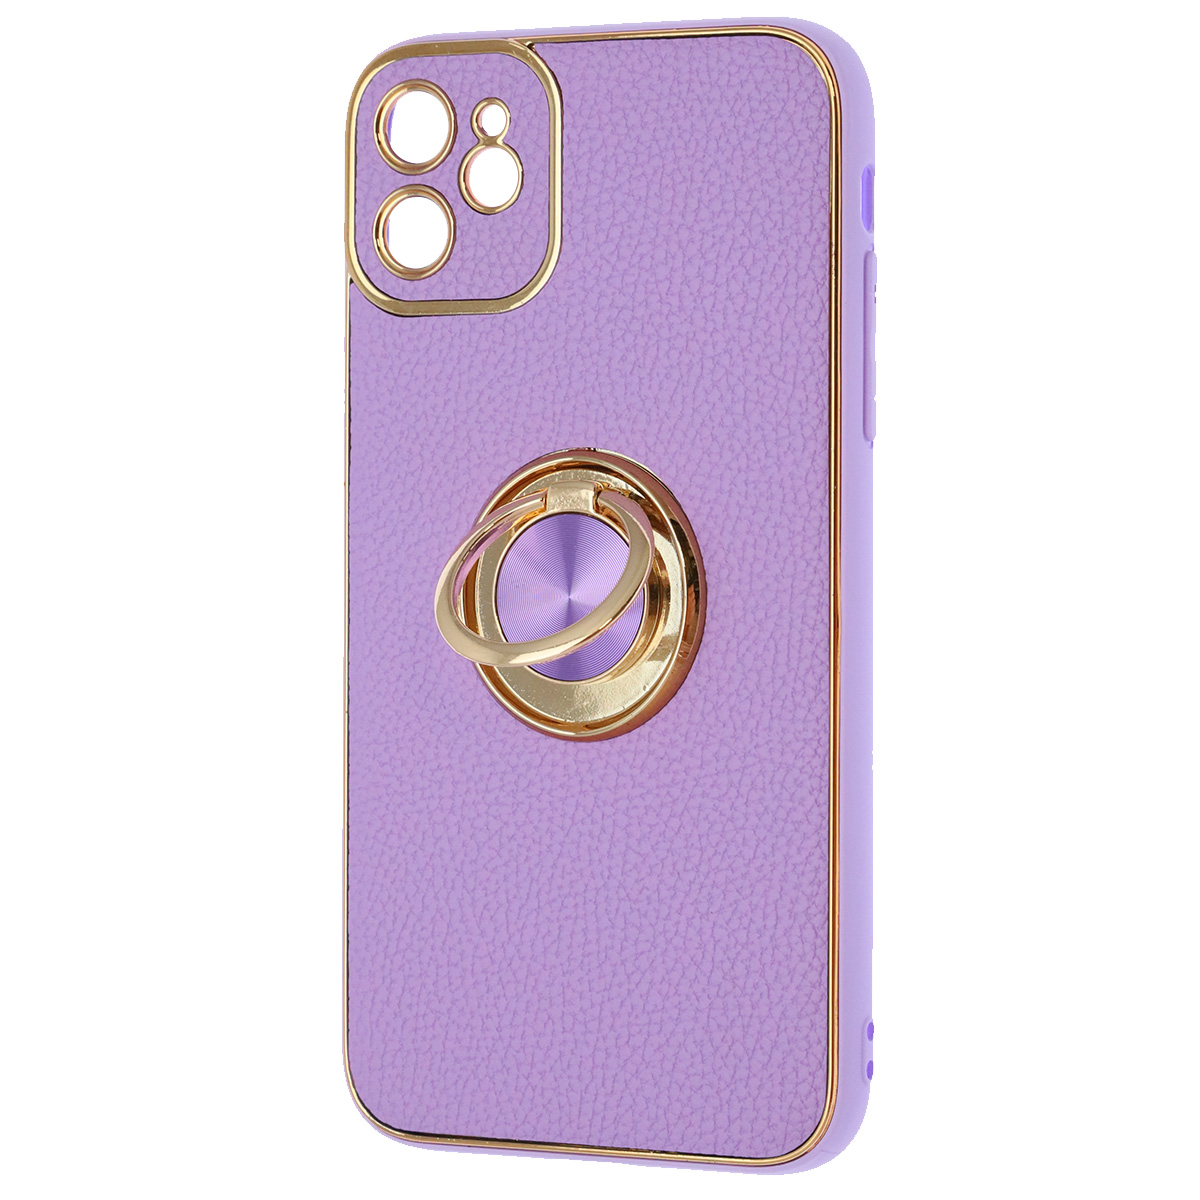 Чехол накладка для APPLE iPhone 11, силикон, пластик, экокожа, металл, кольцо держатель, защита камеры, цвет сиреневый